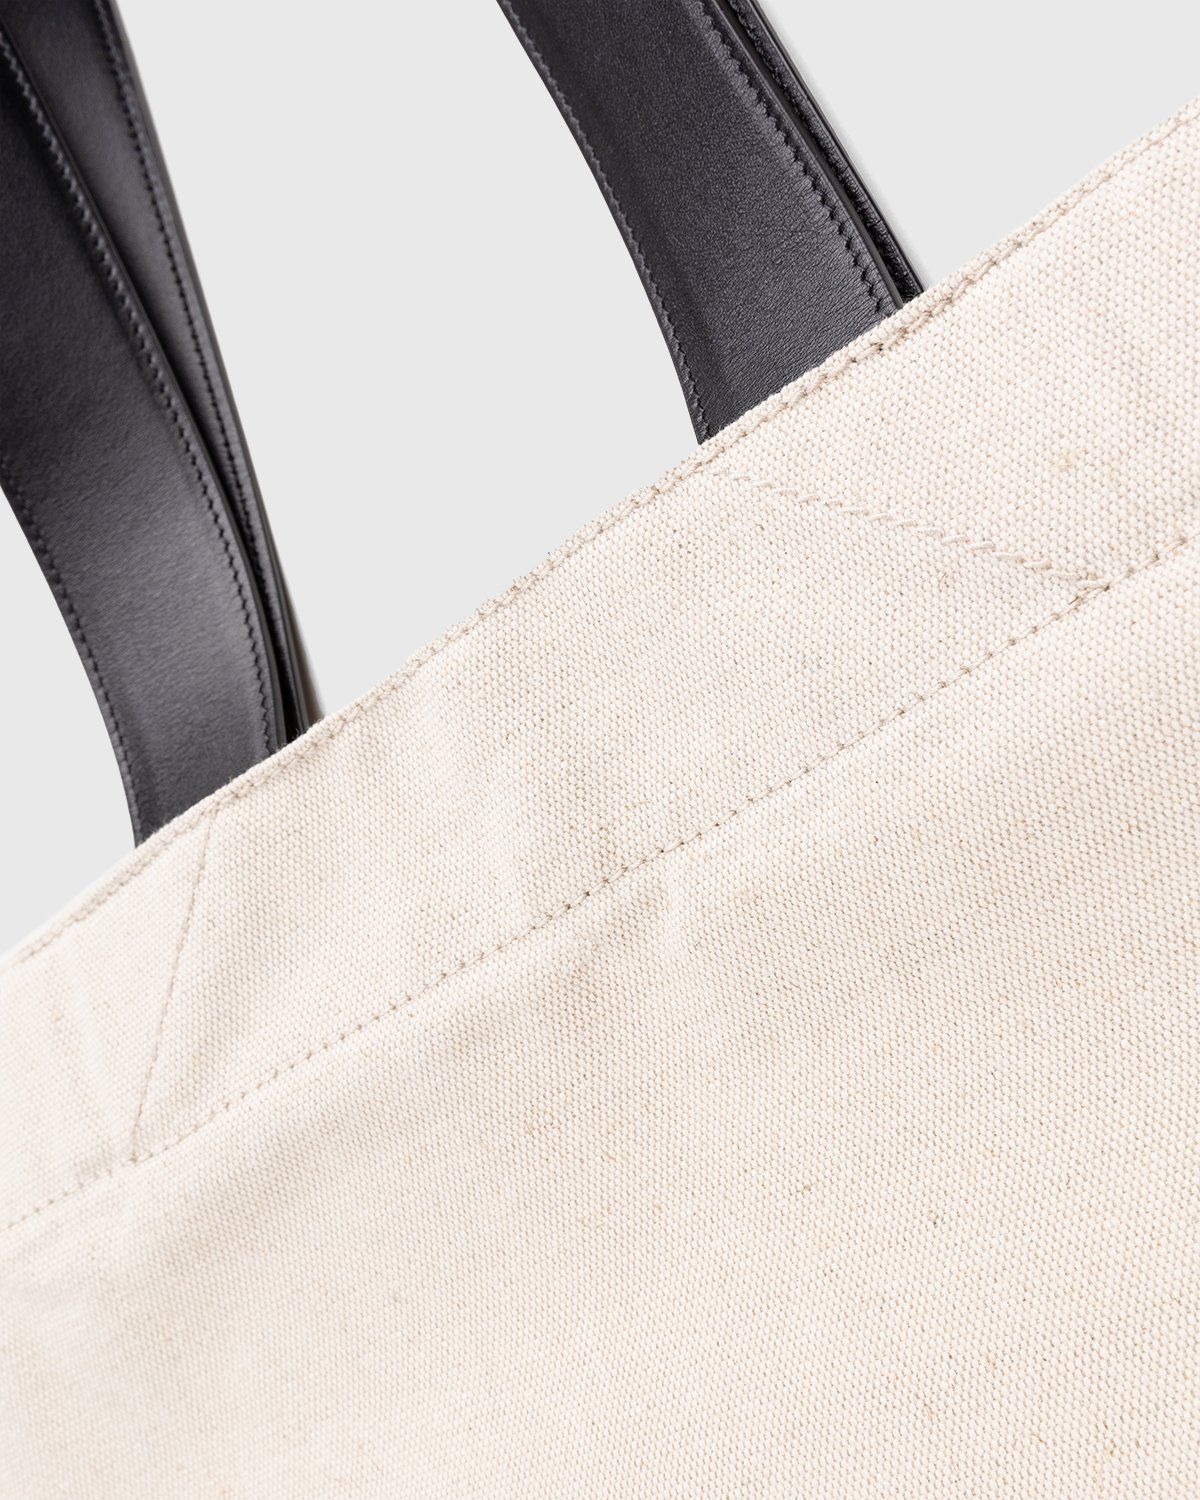 Jil Sander – Large Flat Shopper Natural - Bags - Beige - Image 5